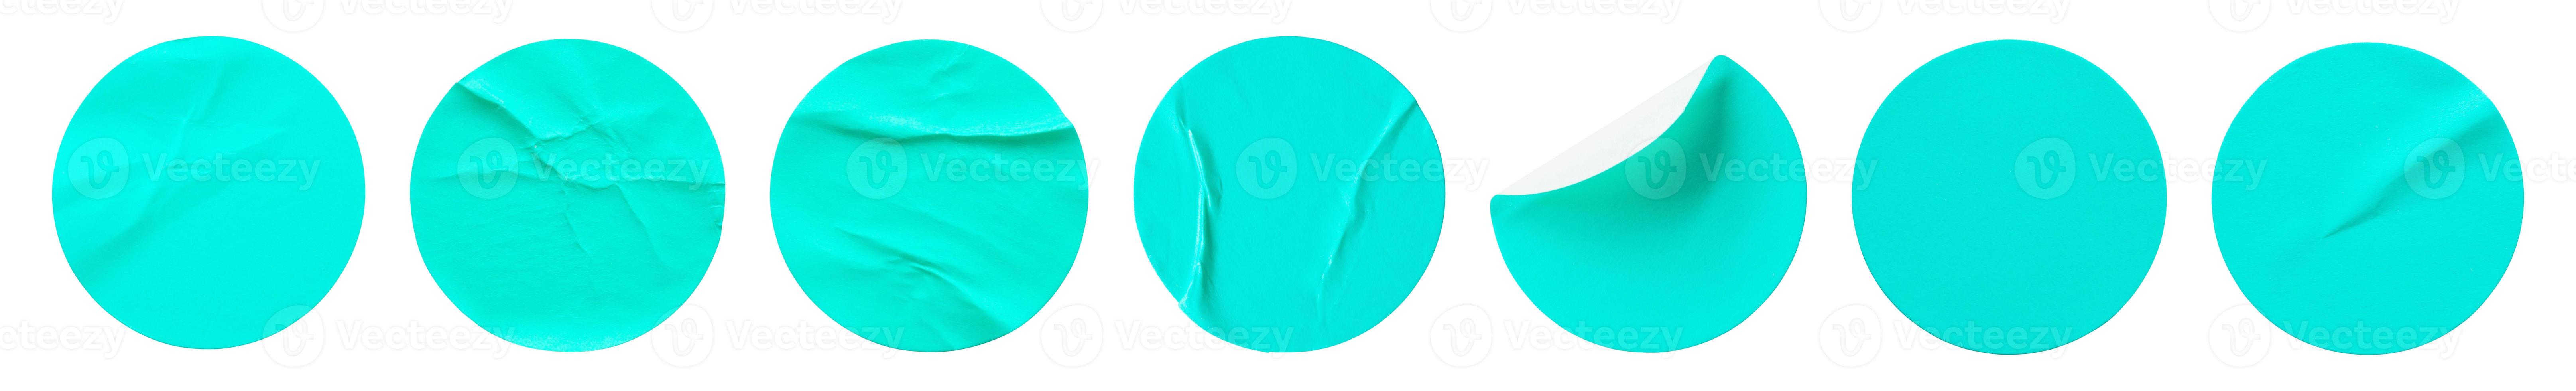 blauer runder papieraufkleber-etikettensatz lokalisiert auf weißem hintergrund foto